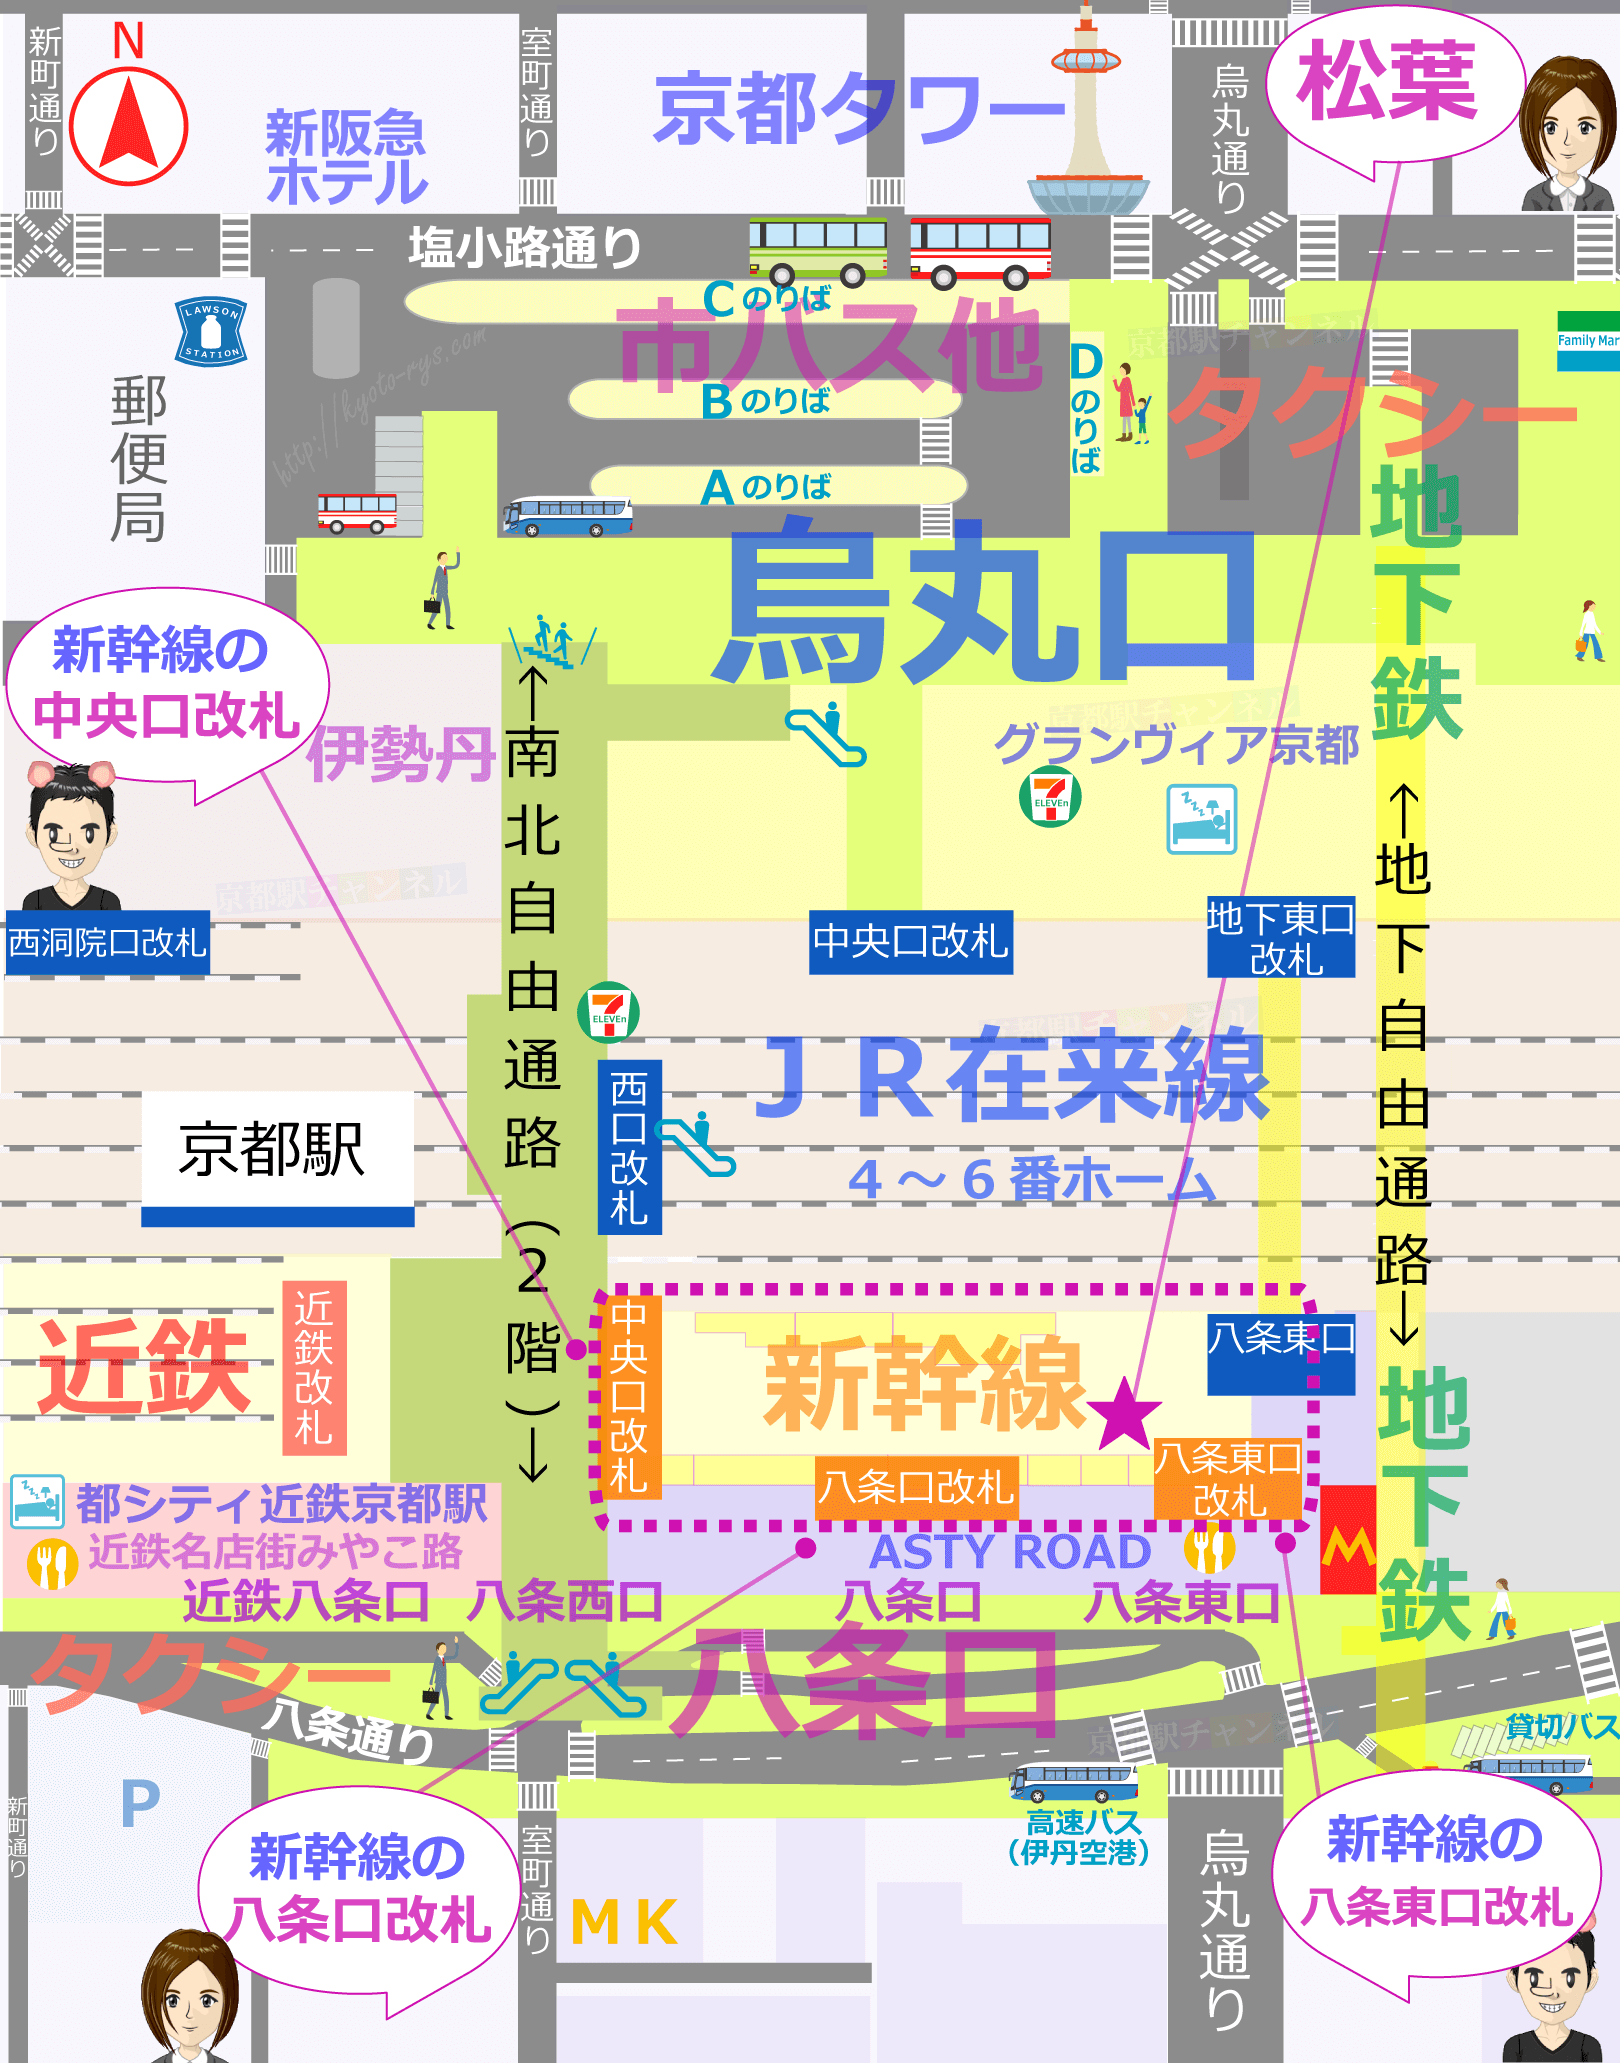 京都駅 新幹線の食事（松葉）マップ